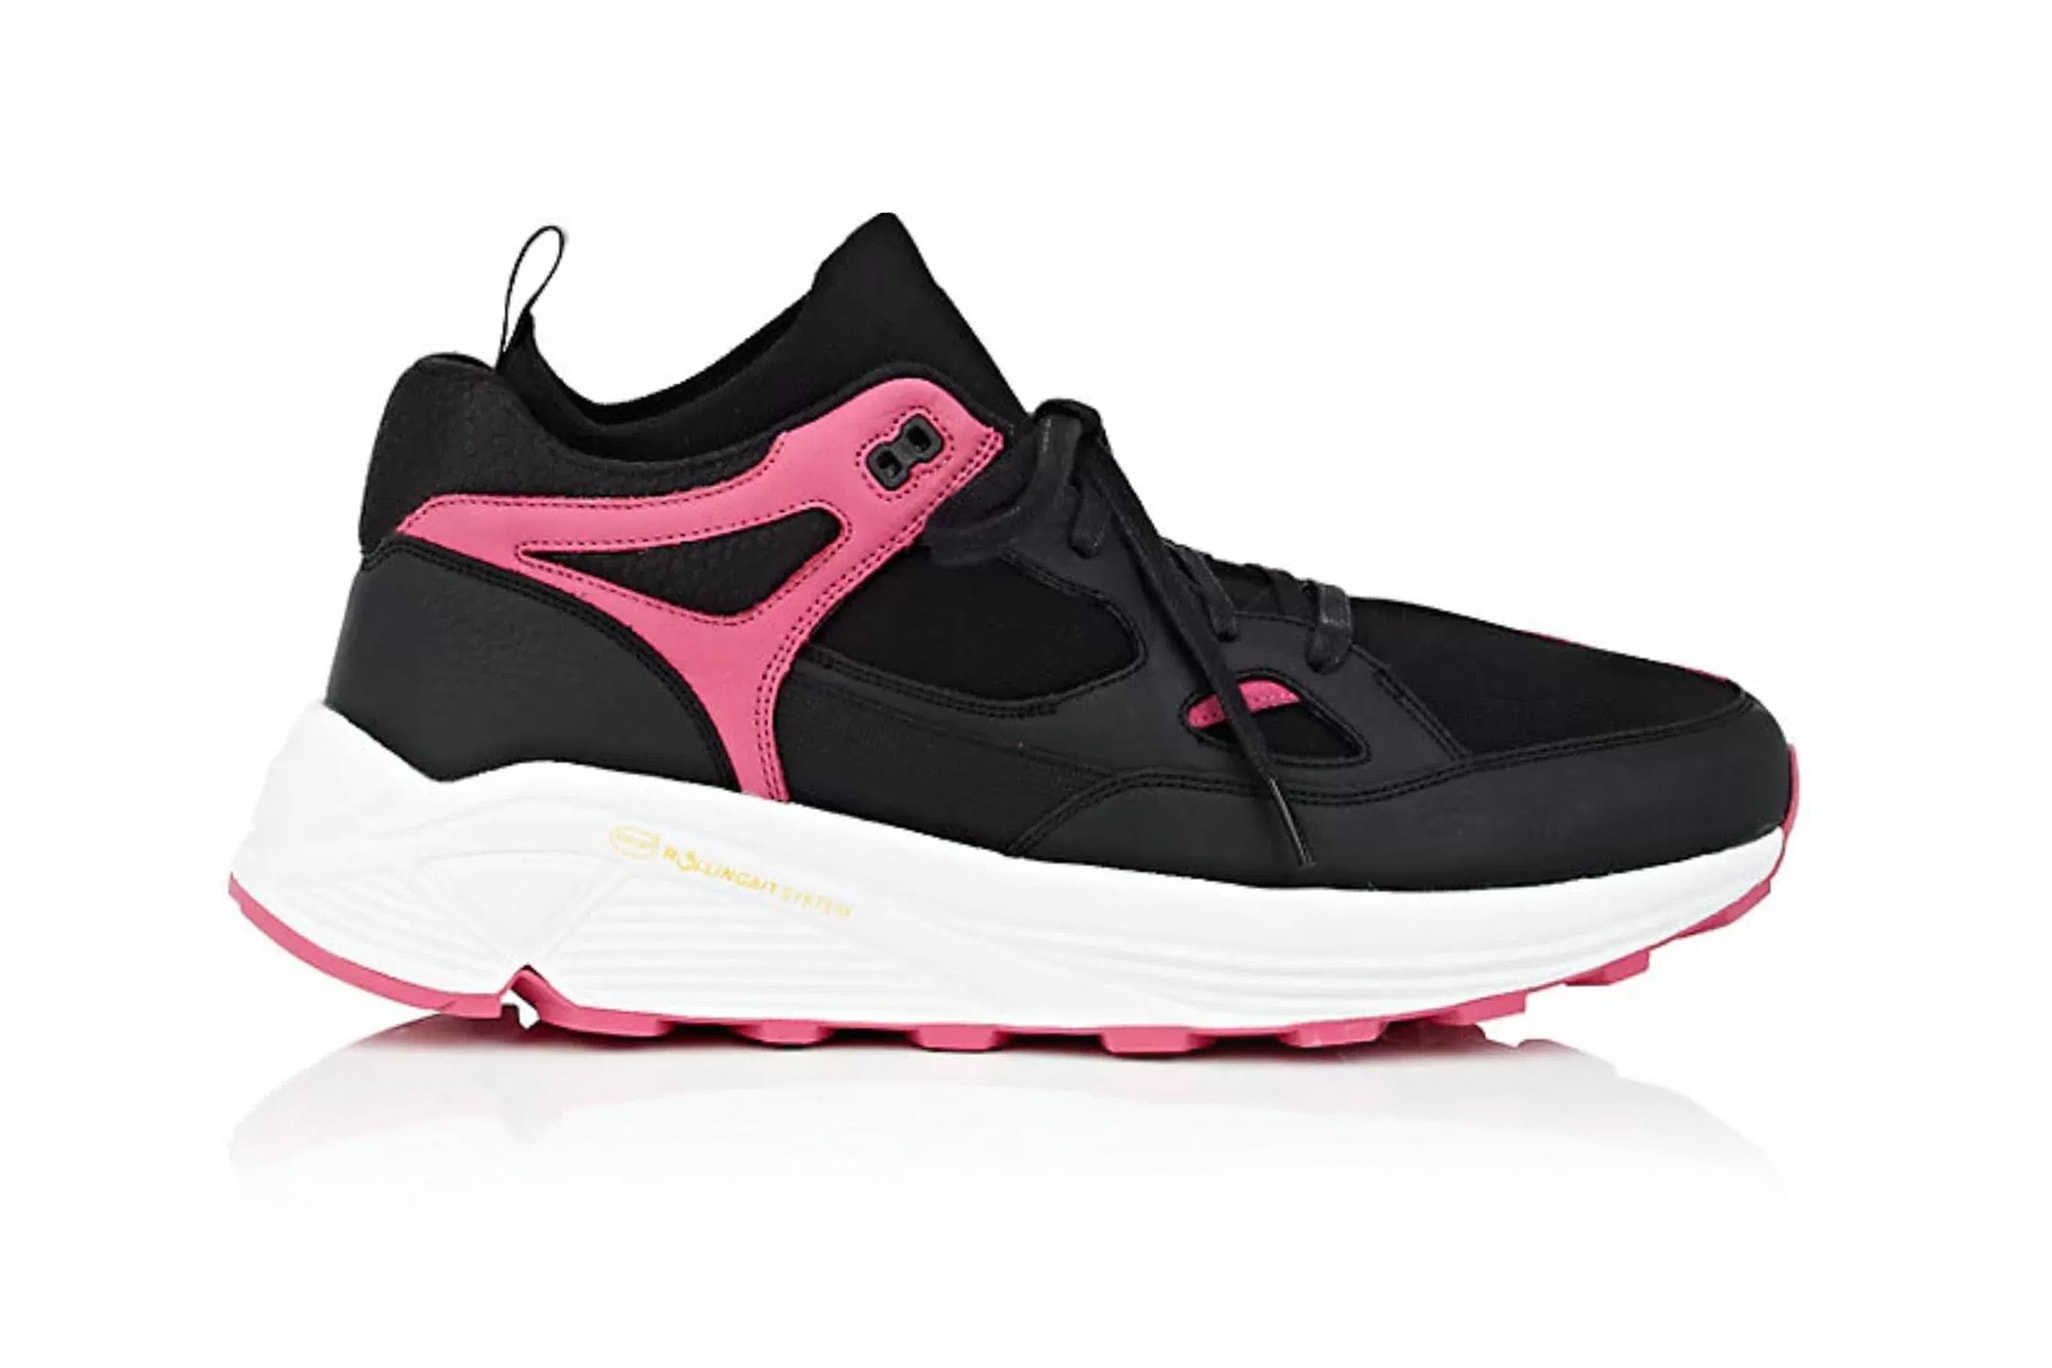 Brandblack Barneys New York Aura release info Black Pink Grey Navy Burgundy footwear sneakers